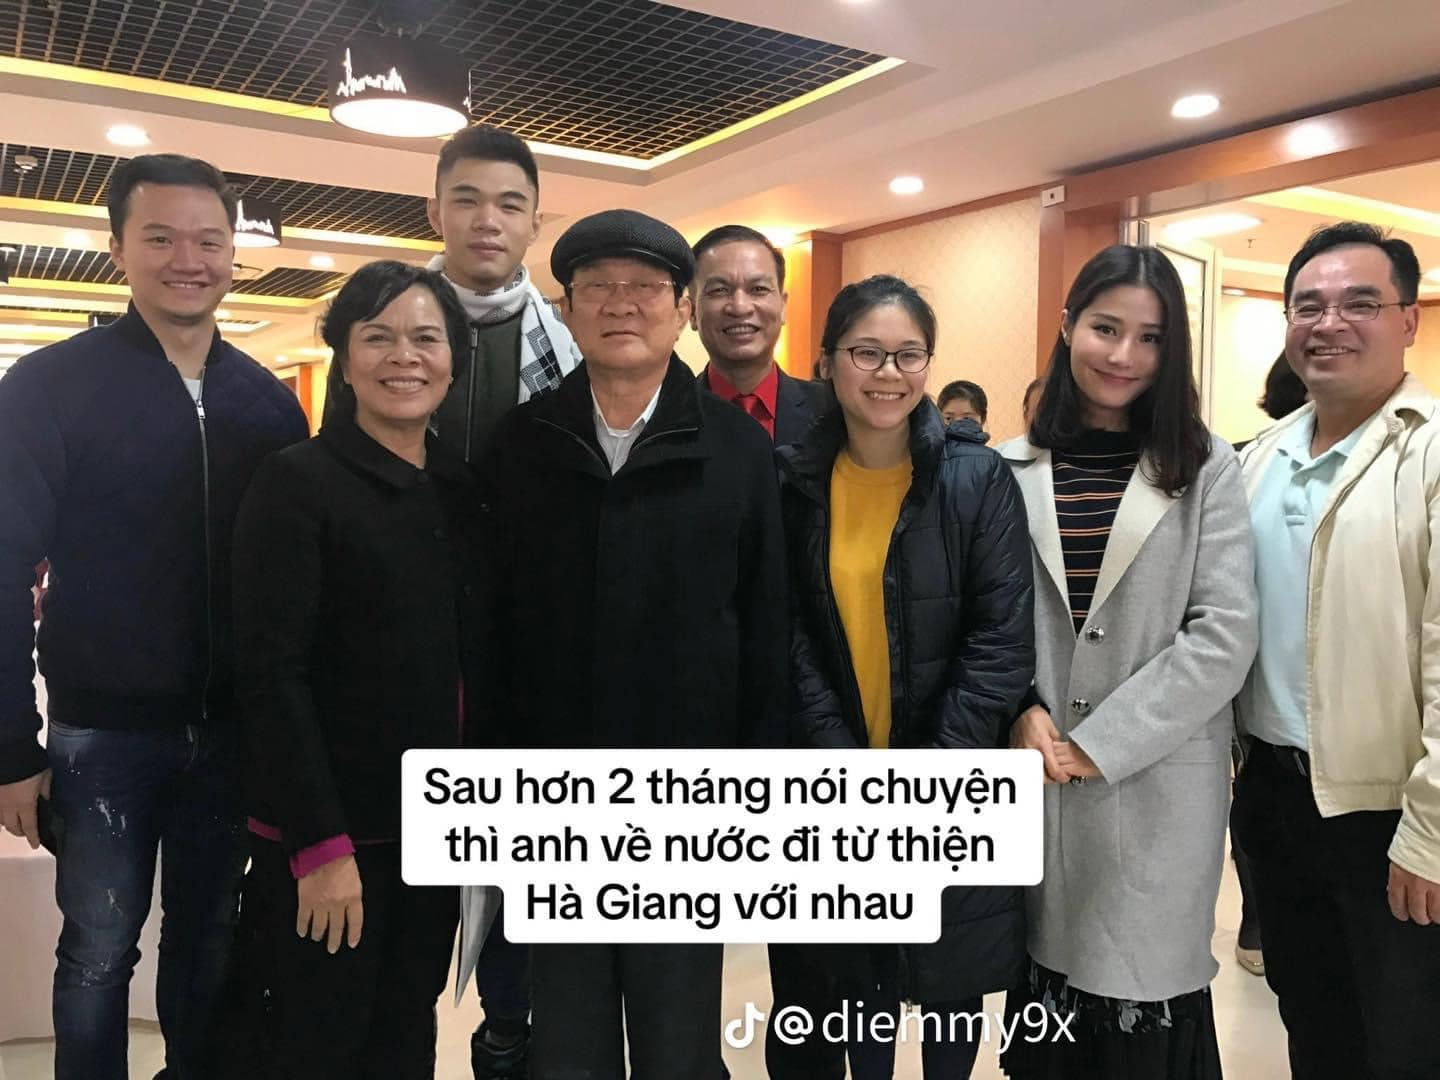 Vinh Nguyễn đồng hành cùng Diễm My 9X trong những chuyến từ thiện